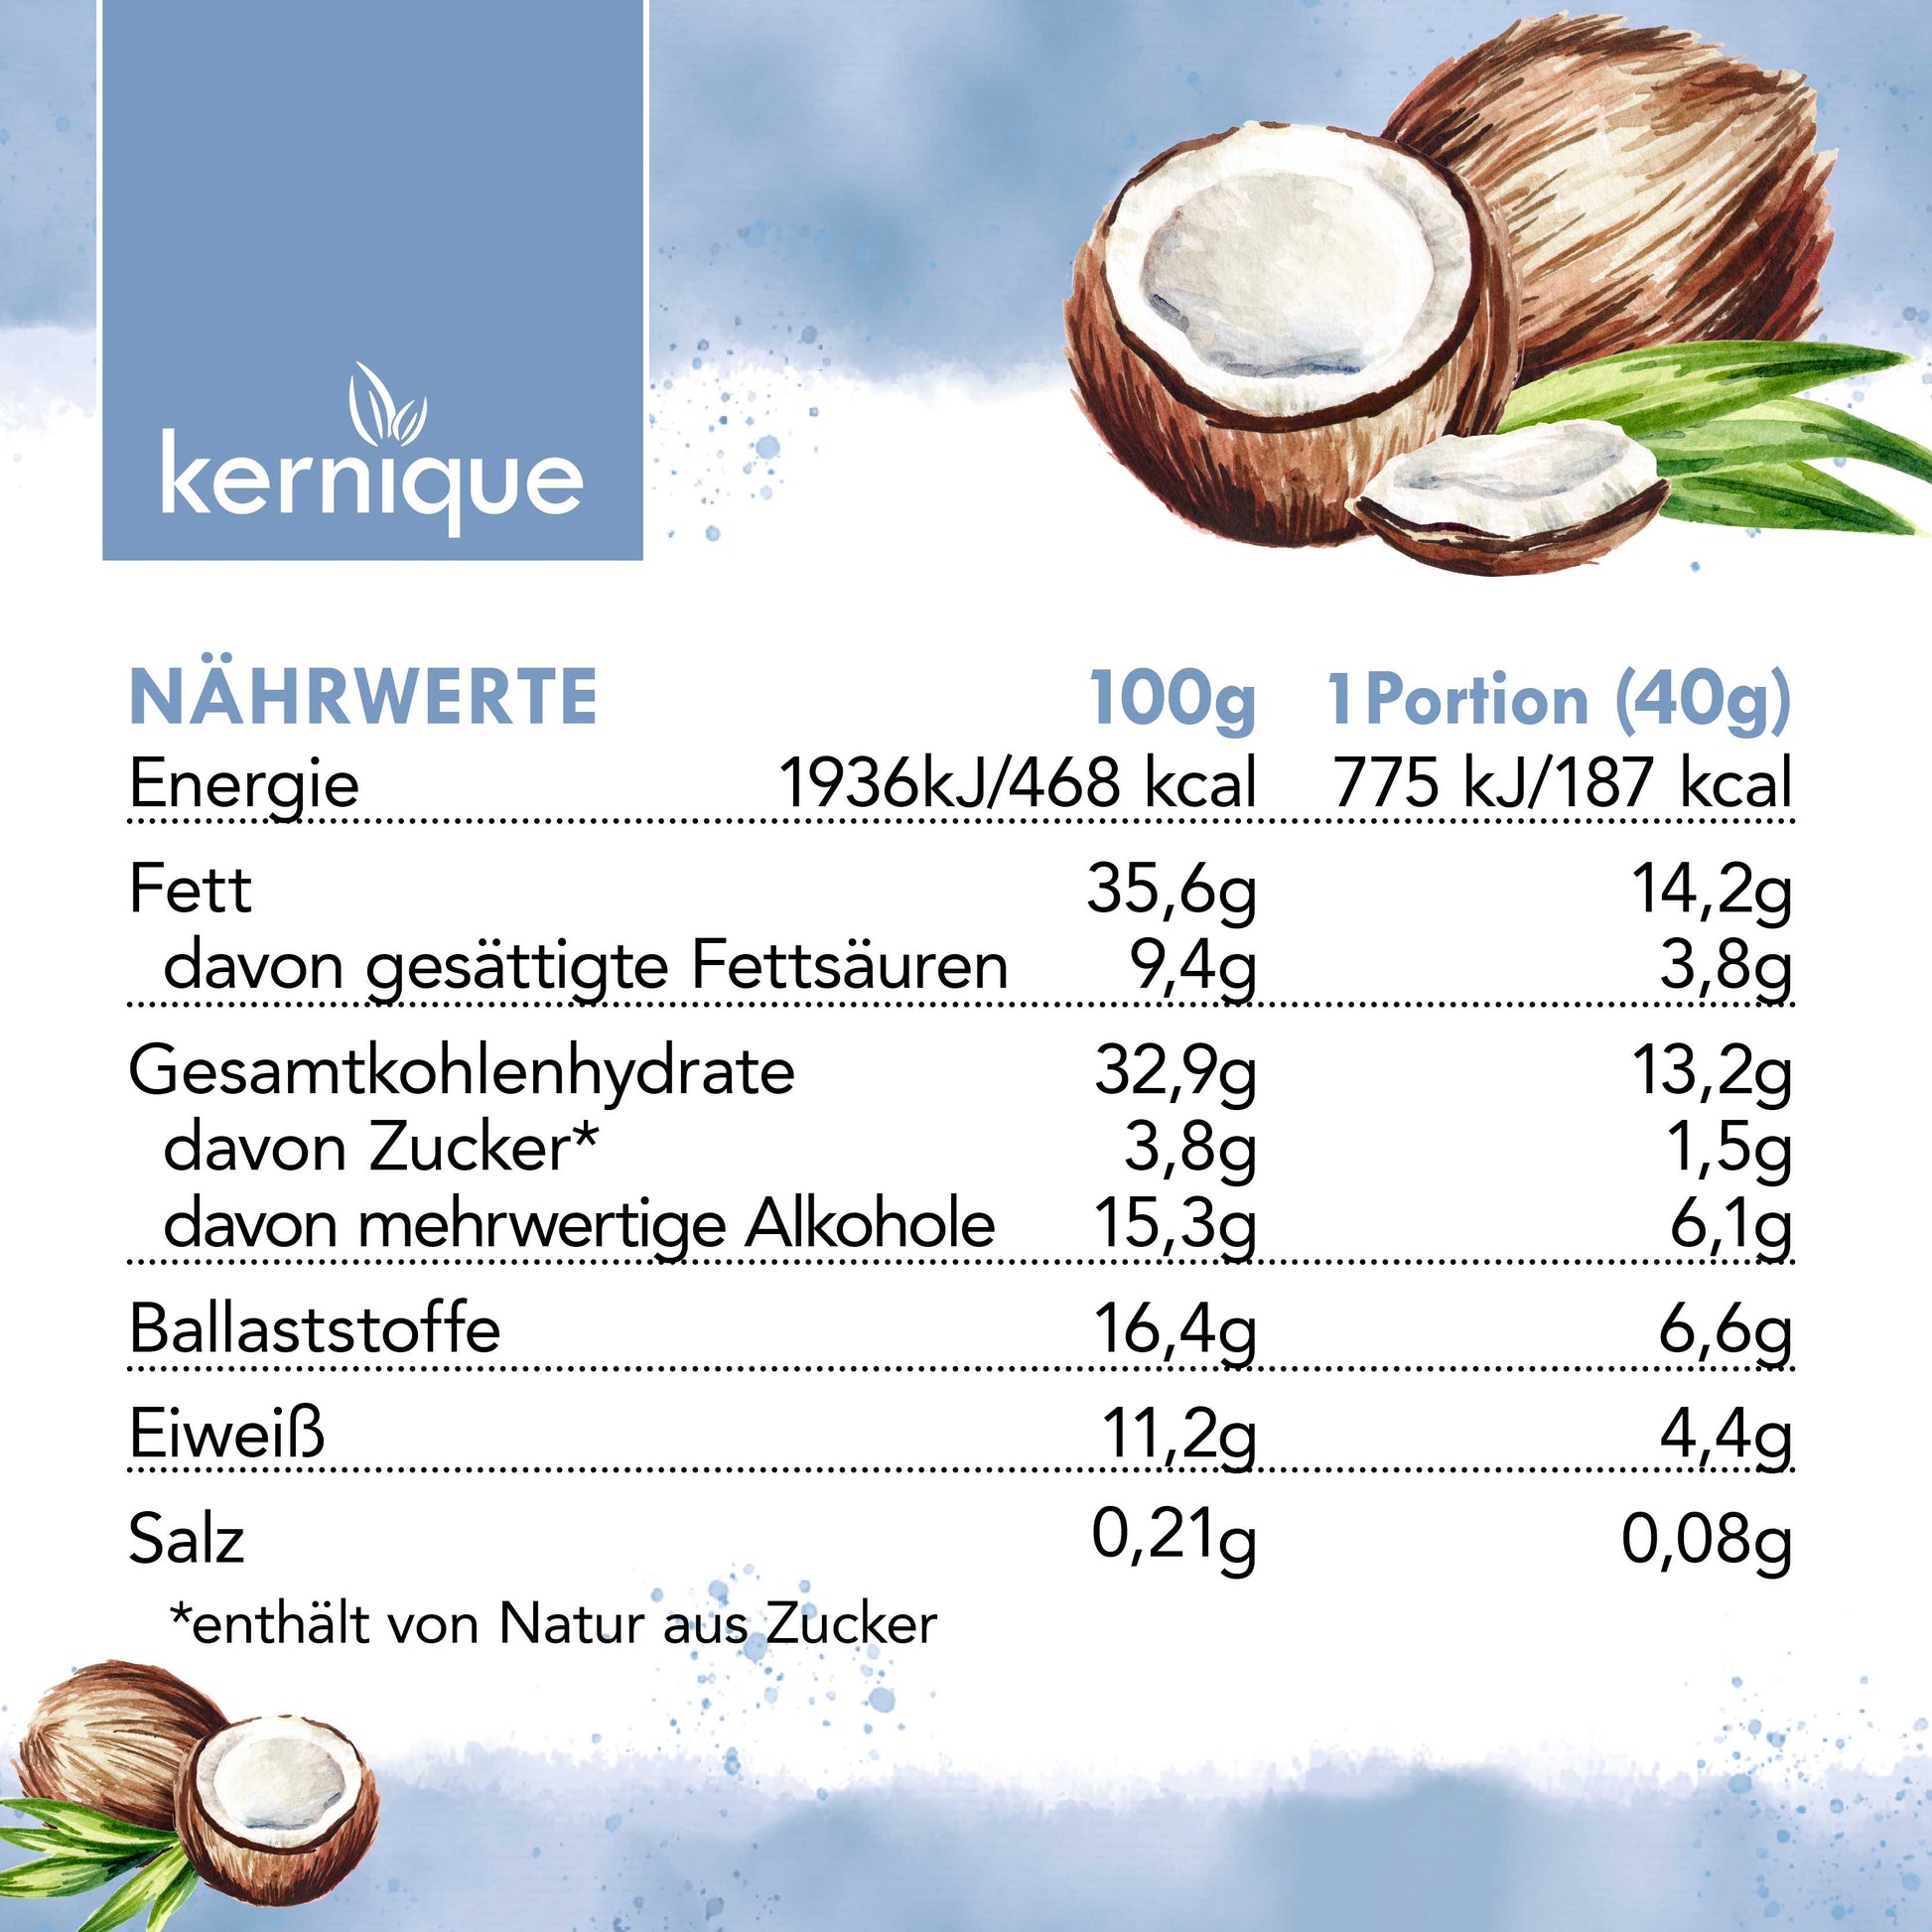 kernique kein riegel - white creamy coconut (8+1 gratis) kernique.de